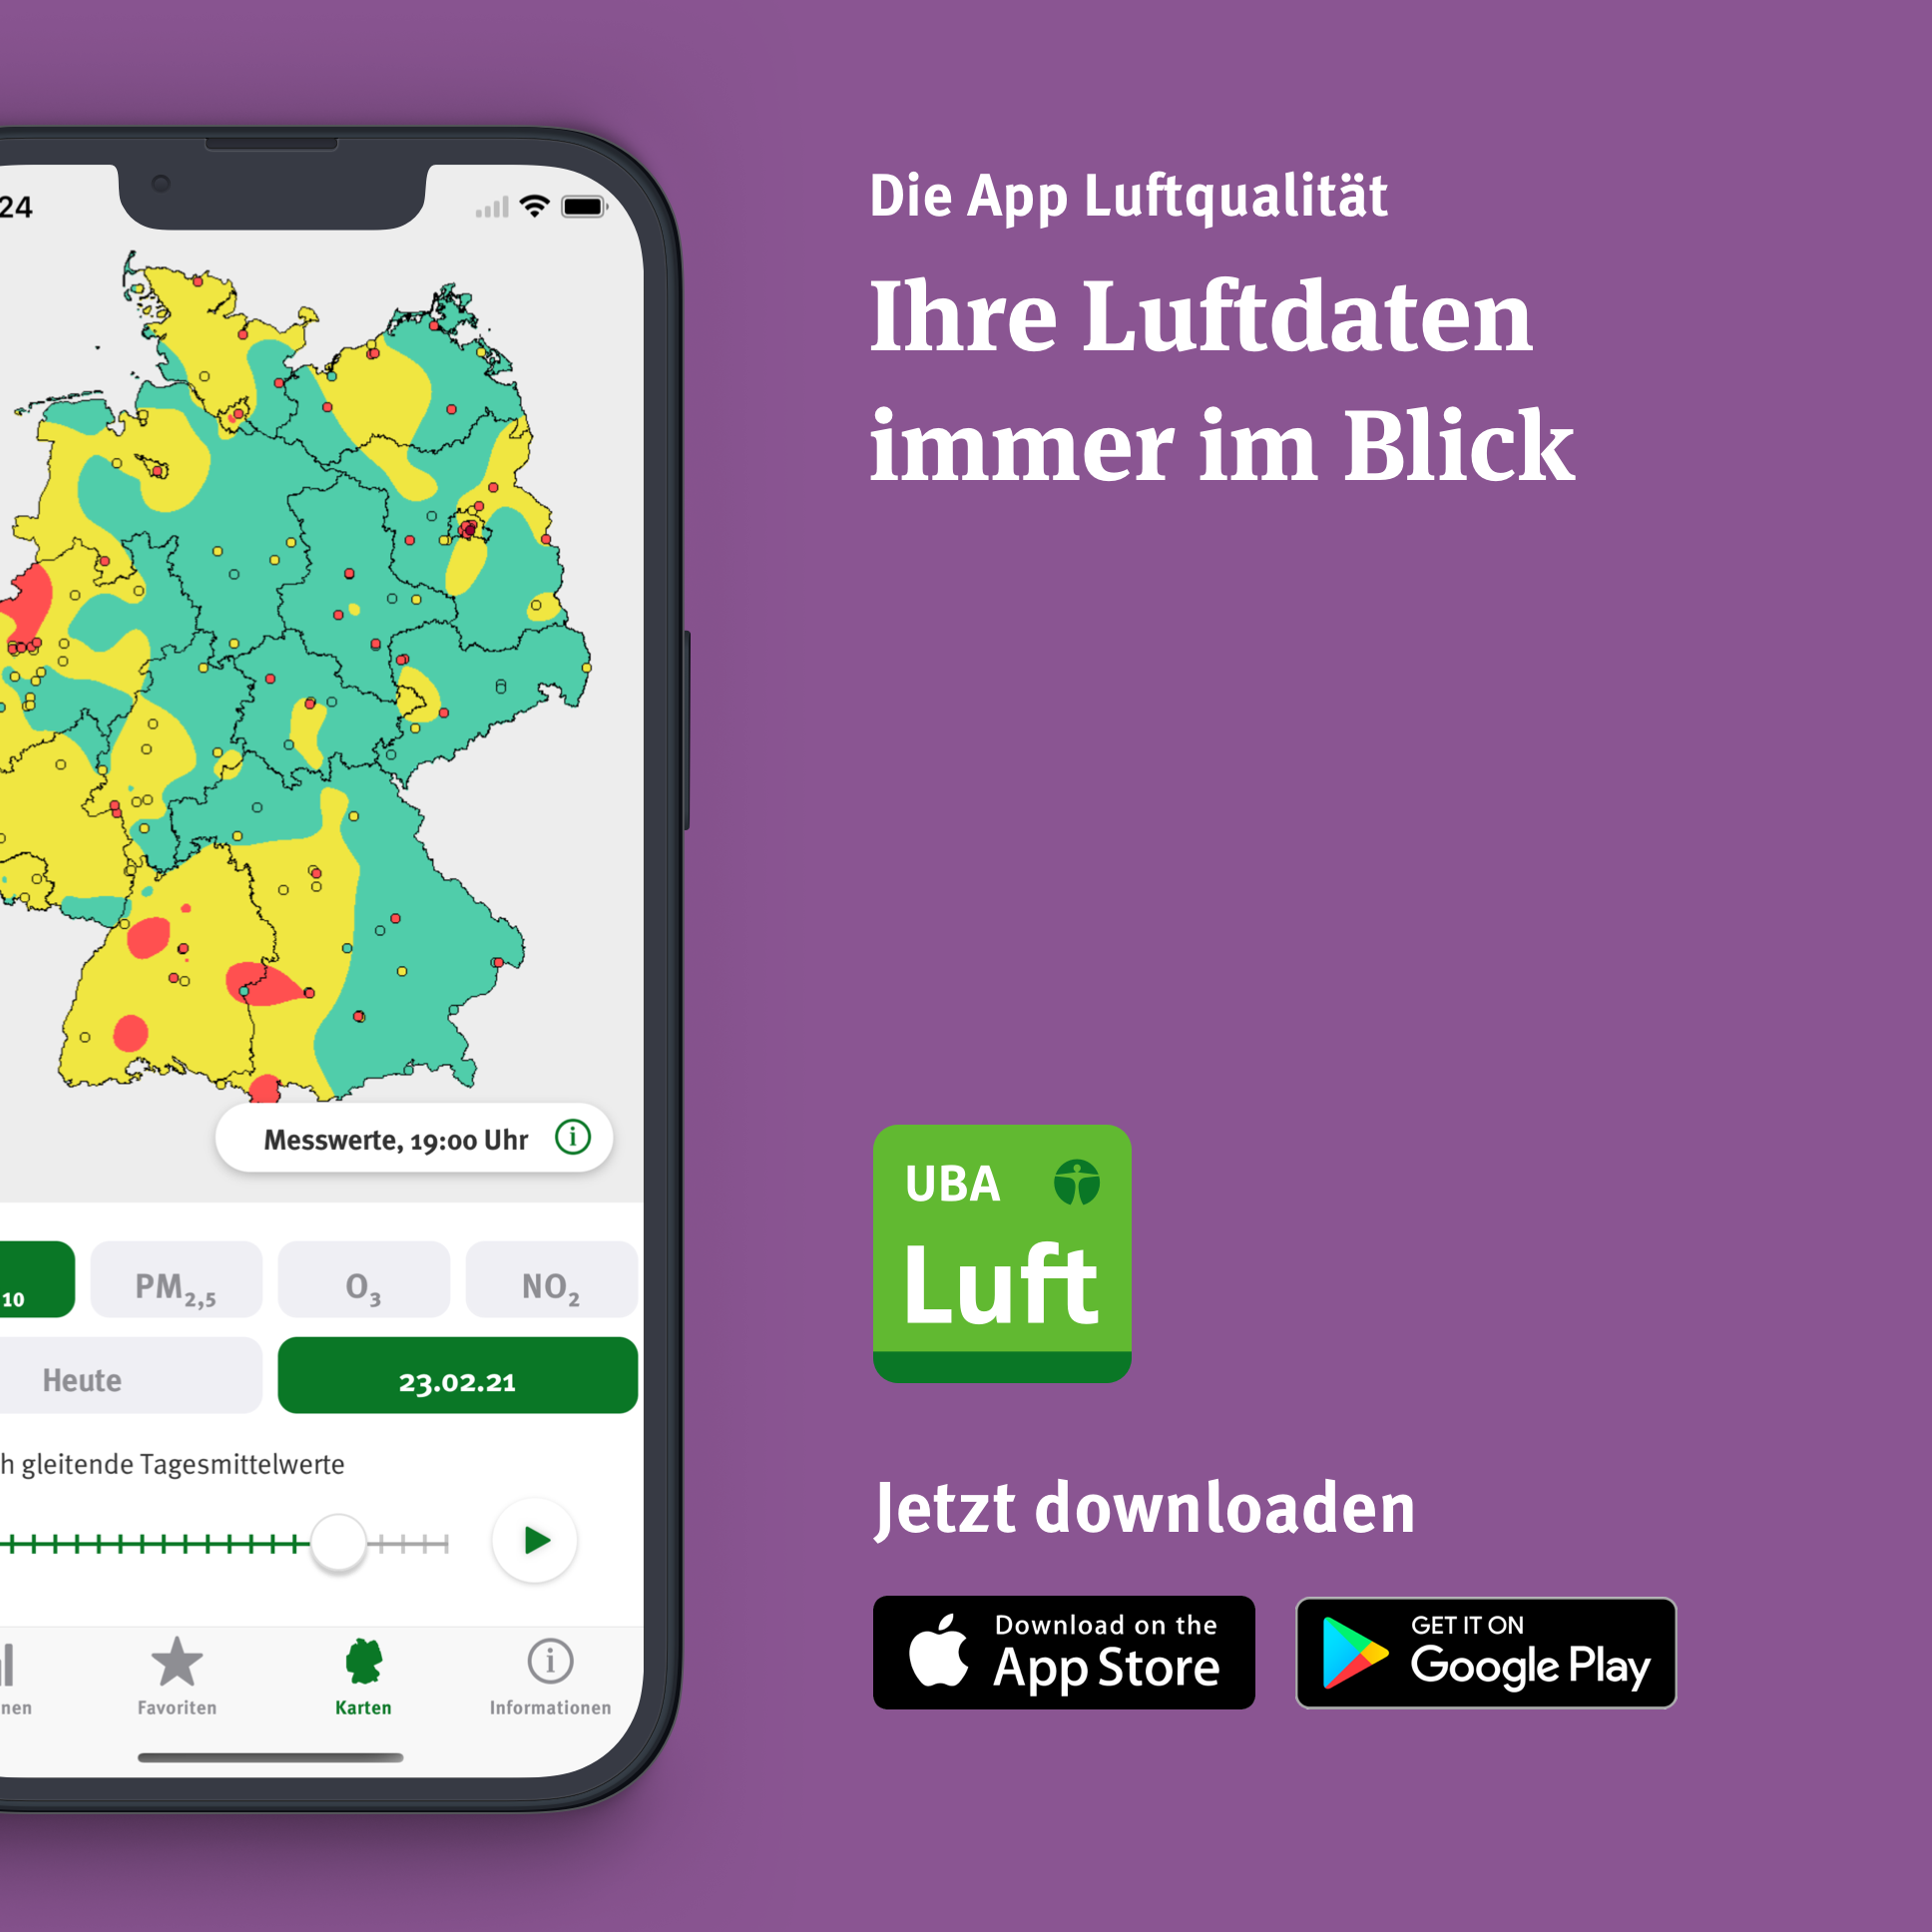 Das Bild zeigt die App Luftqualität und beispielhaft eine deutschlandweite Karte für PM10.